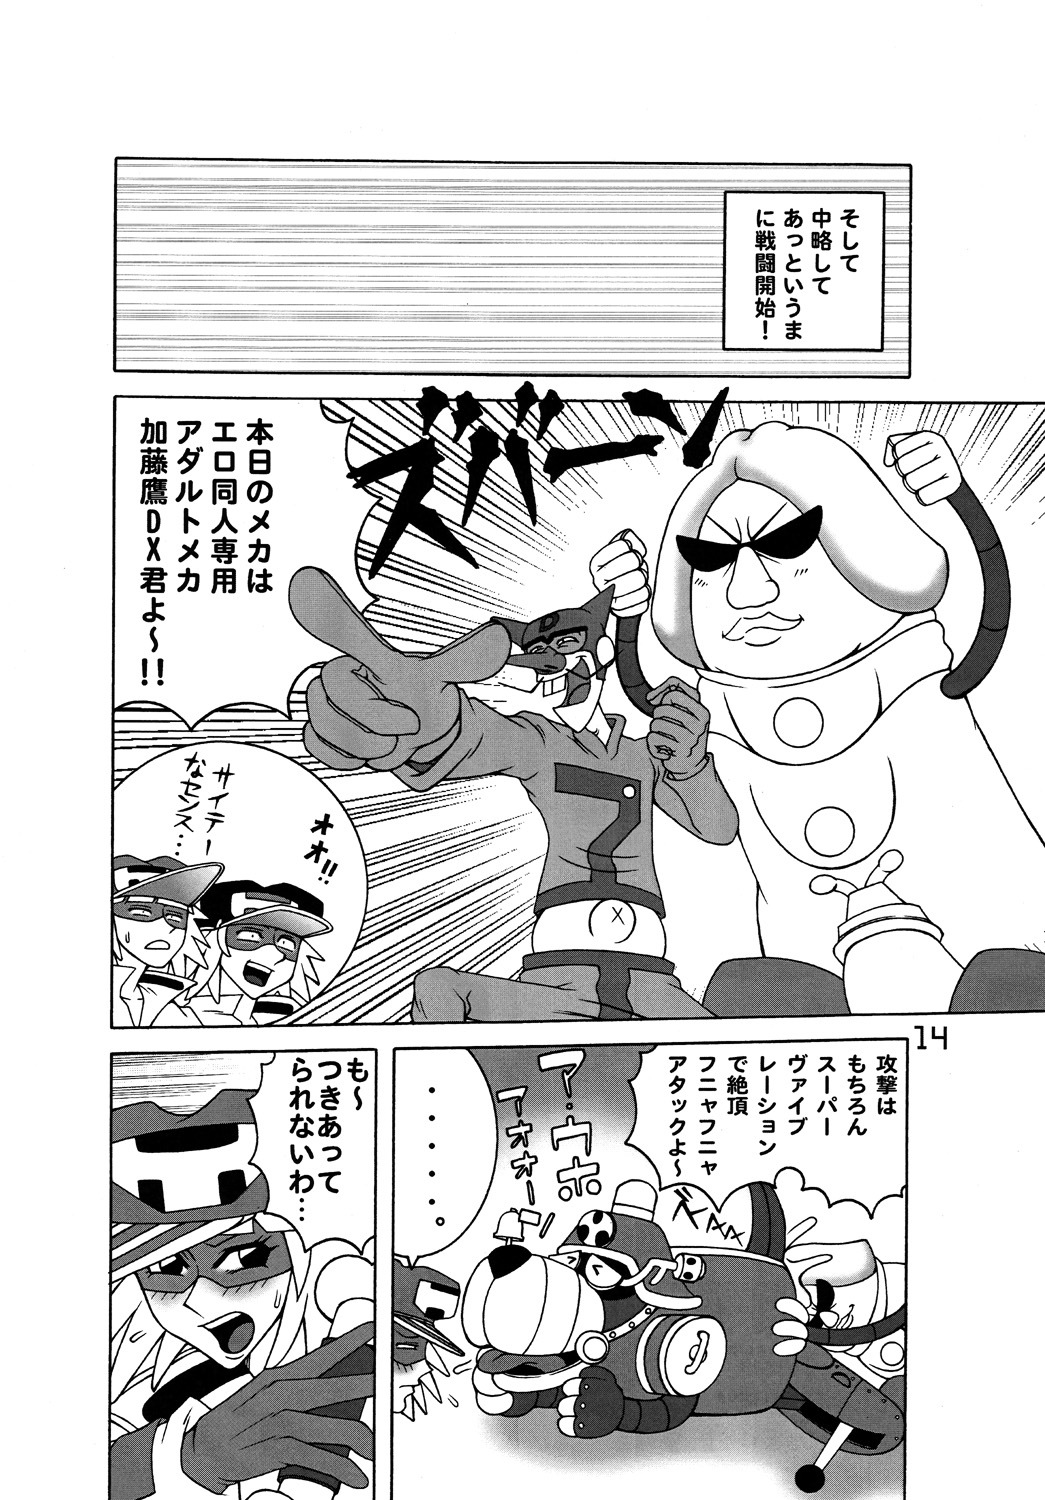 [DYNAMITE HONEY] Tatsunoko Dynamite page 13 full